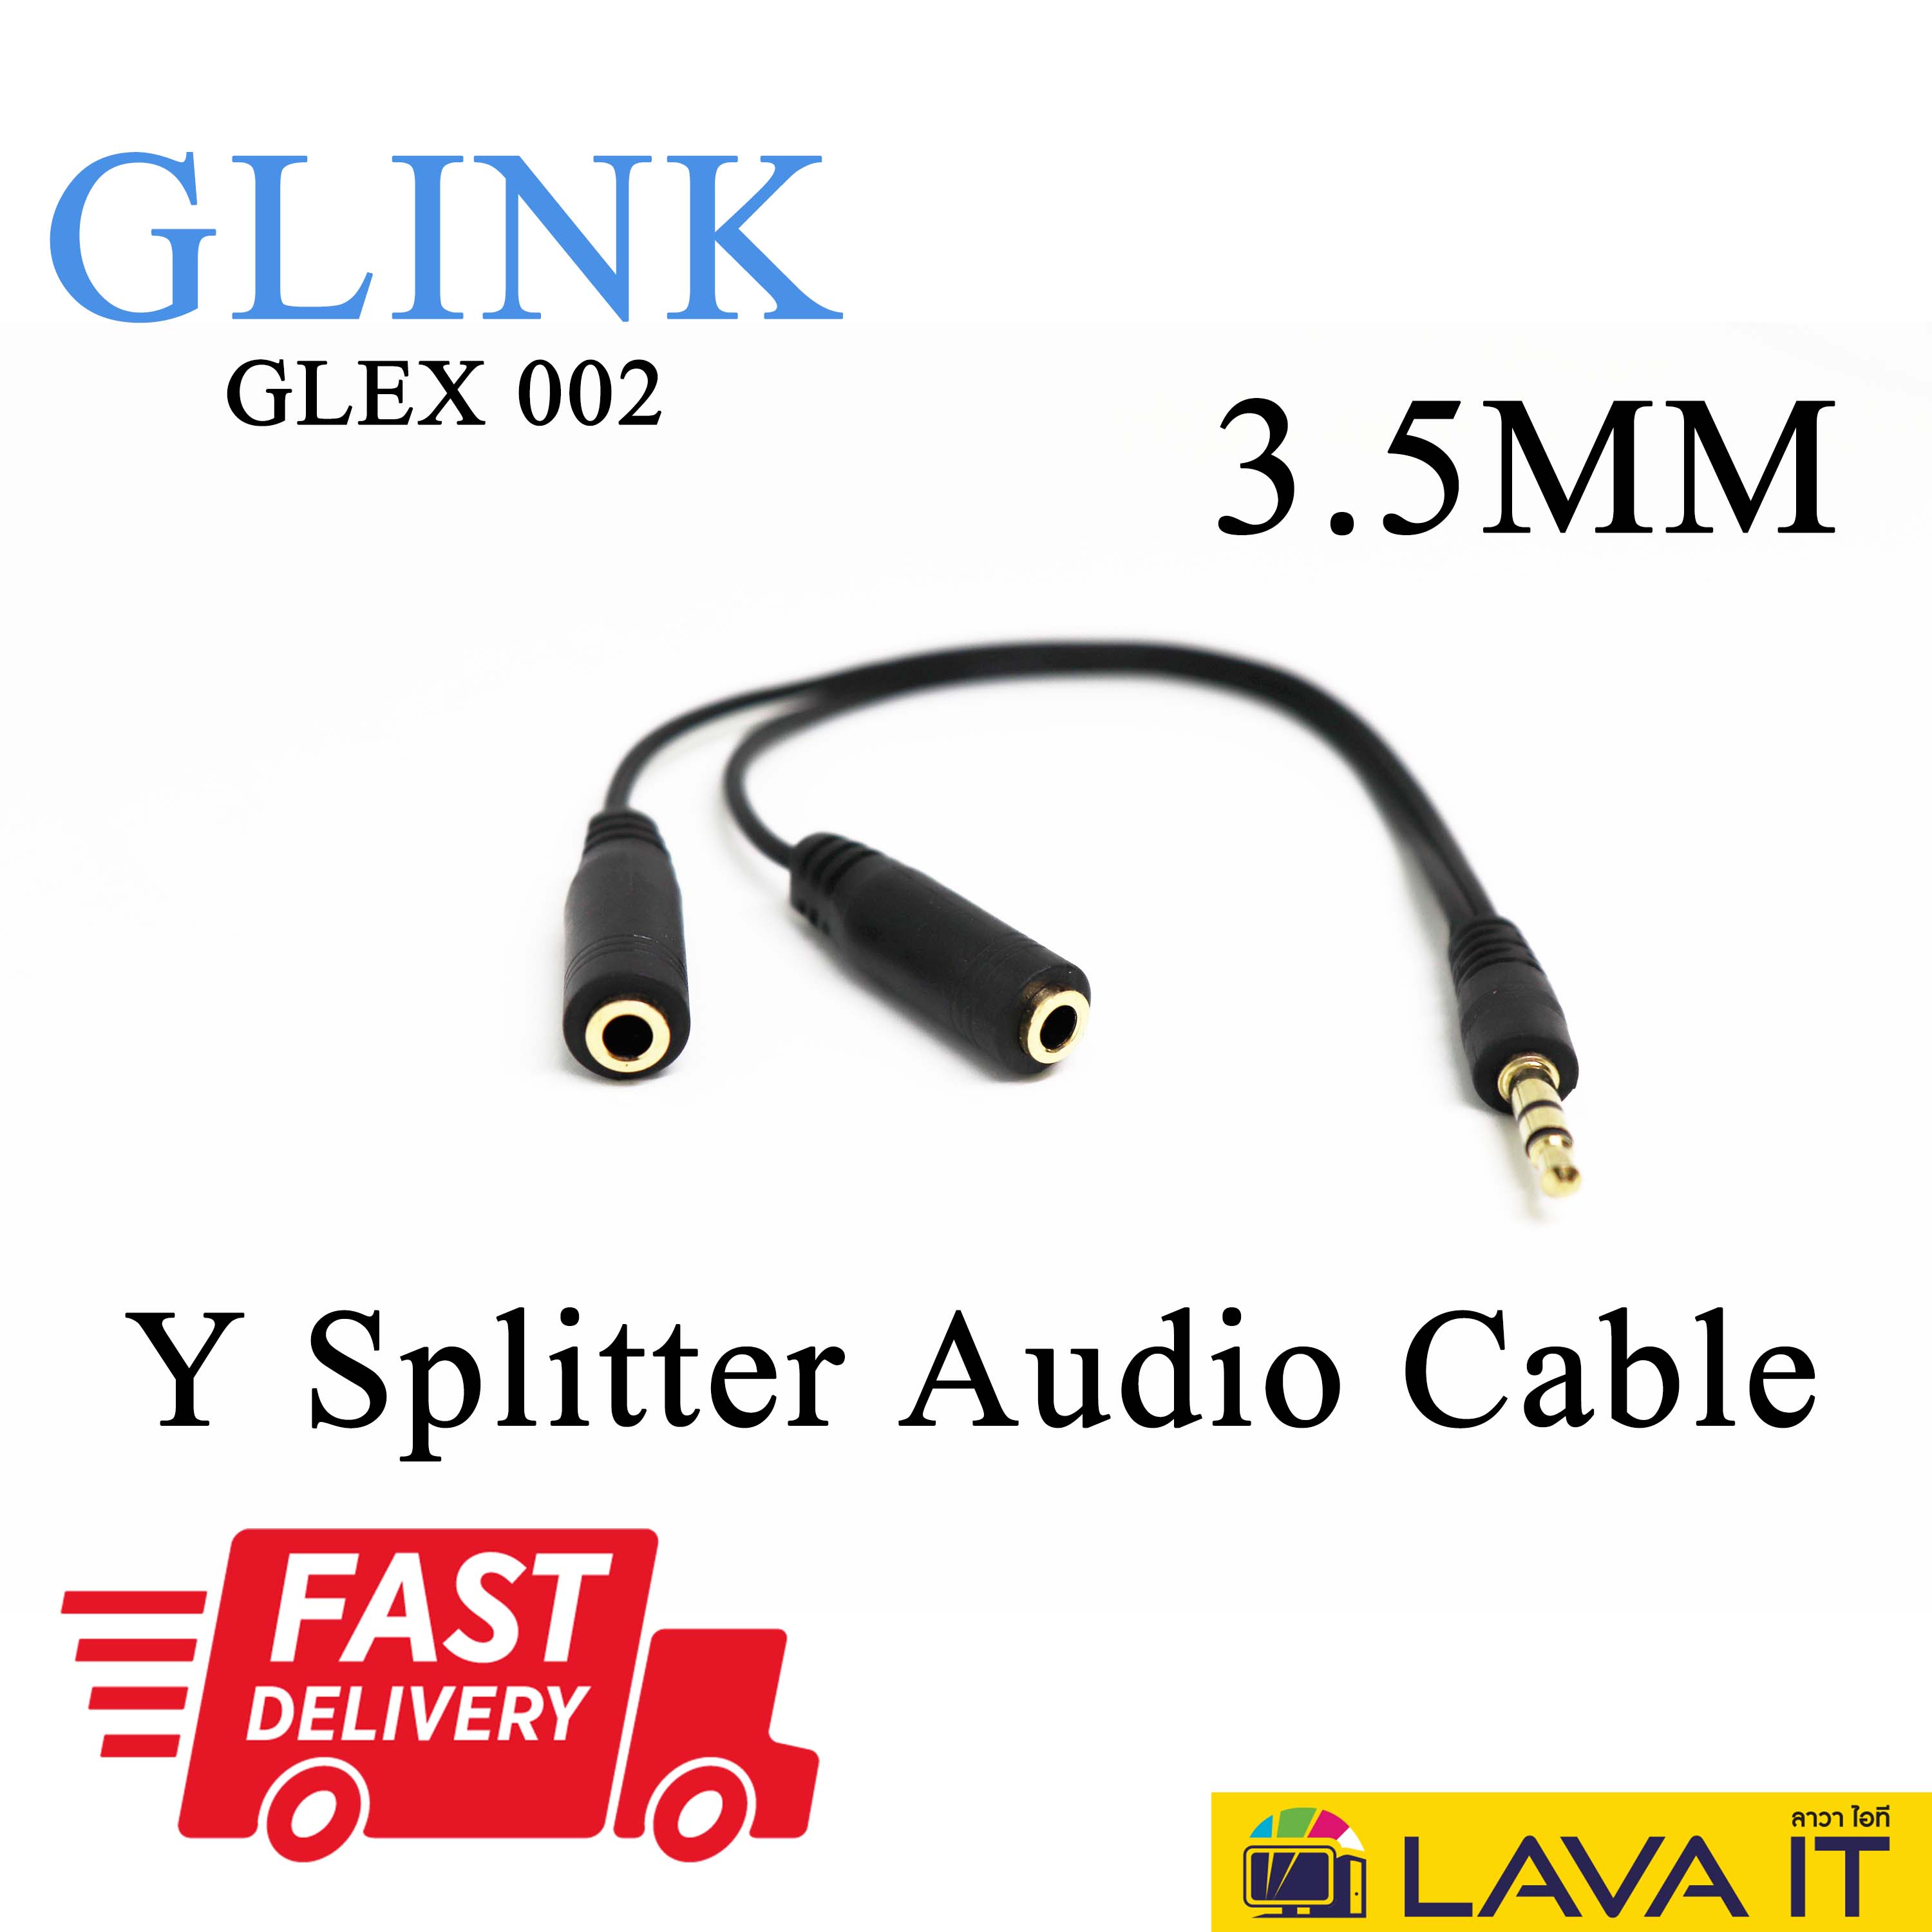 Cable Y Small Talk and Mic 3.5 mm สาย Y 3.5 M รวม หูฟัง - ไมค์ ต่อไมค์เข้ากับมือถือ GLINK